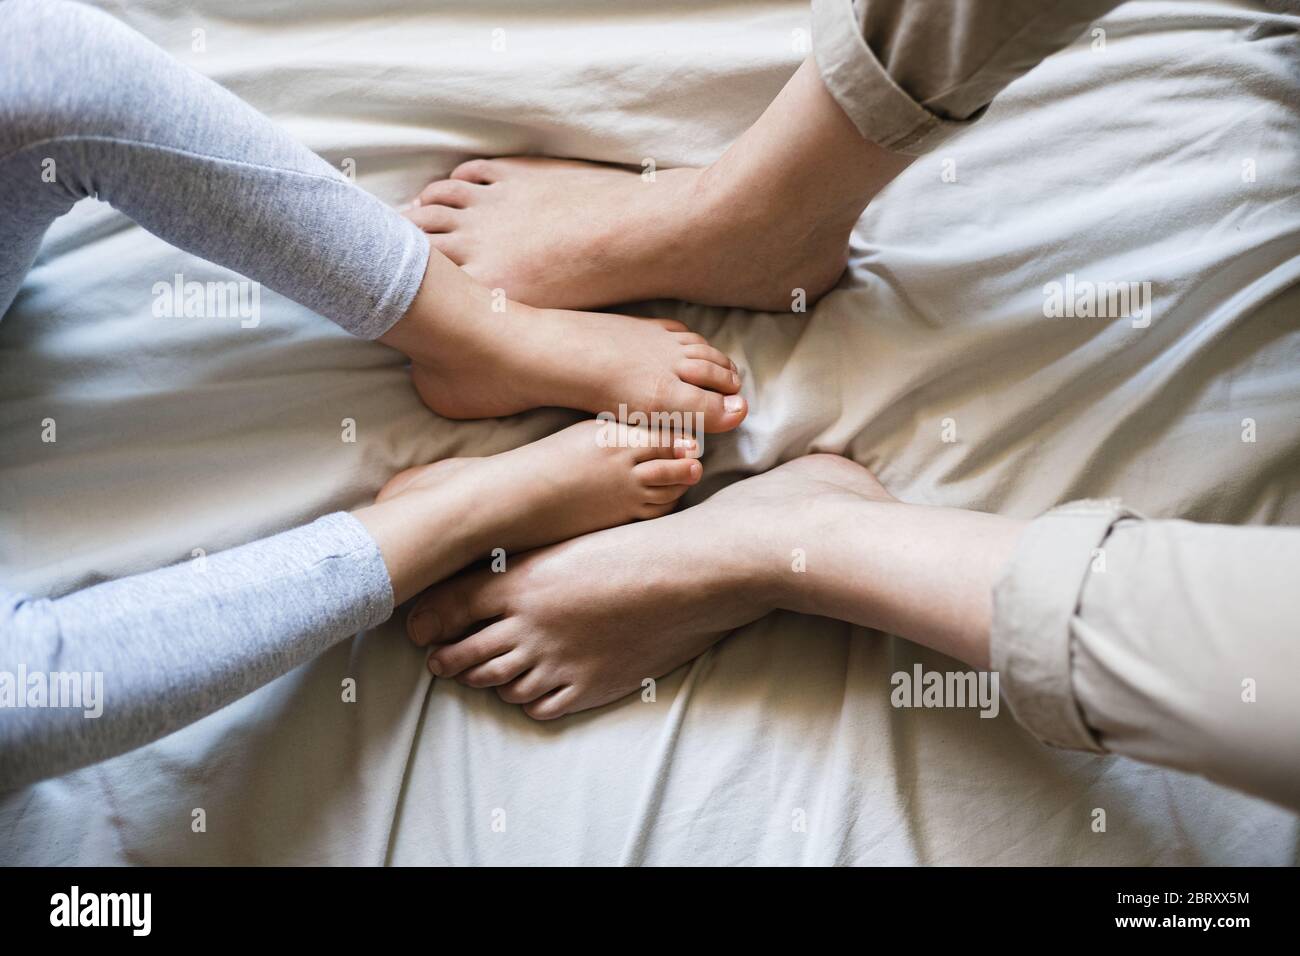 Mutter und Kind kreuzen ihre Füße zusammen, während sie auf beigefarbenen Bettlaken sitzen. Es ist ein zarter Moment, wenn sie vergleichen, wie ähnlich sie sind Stockfoto